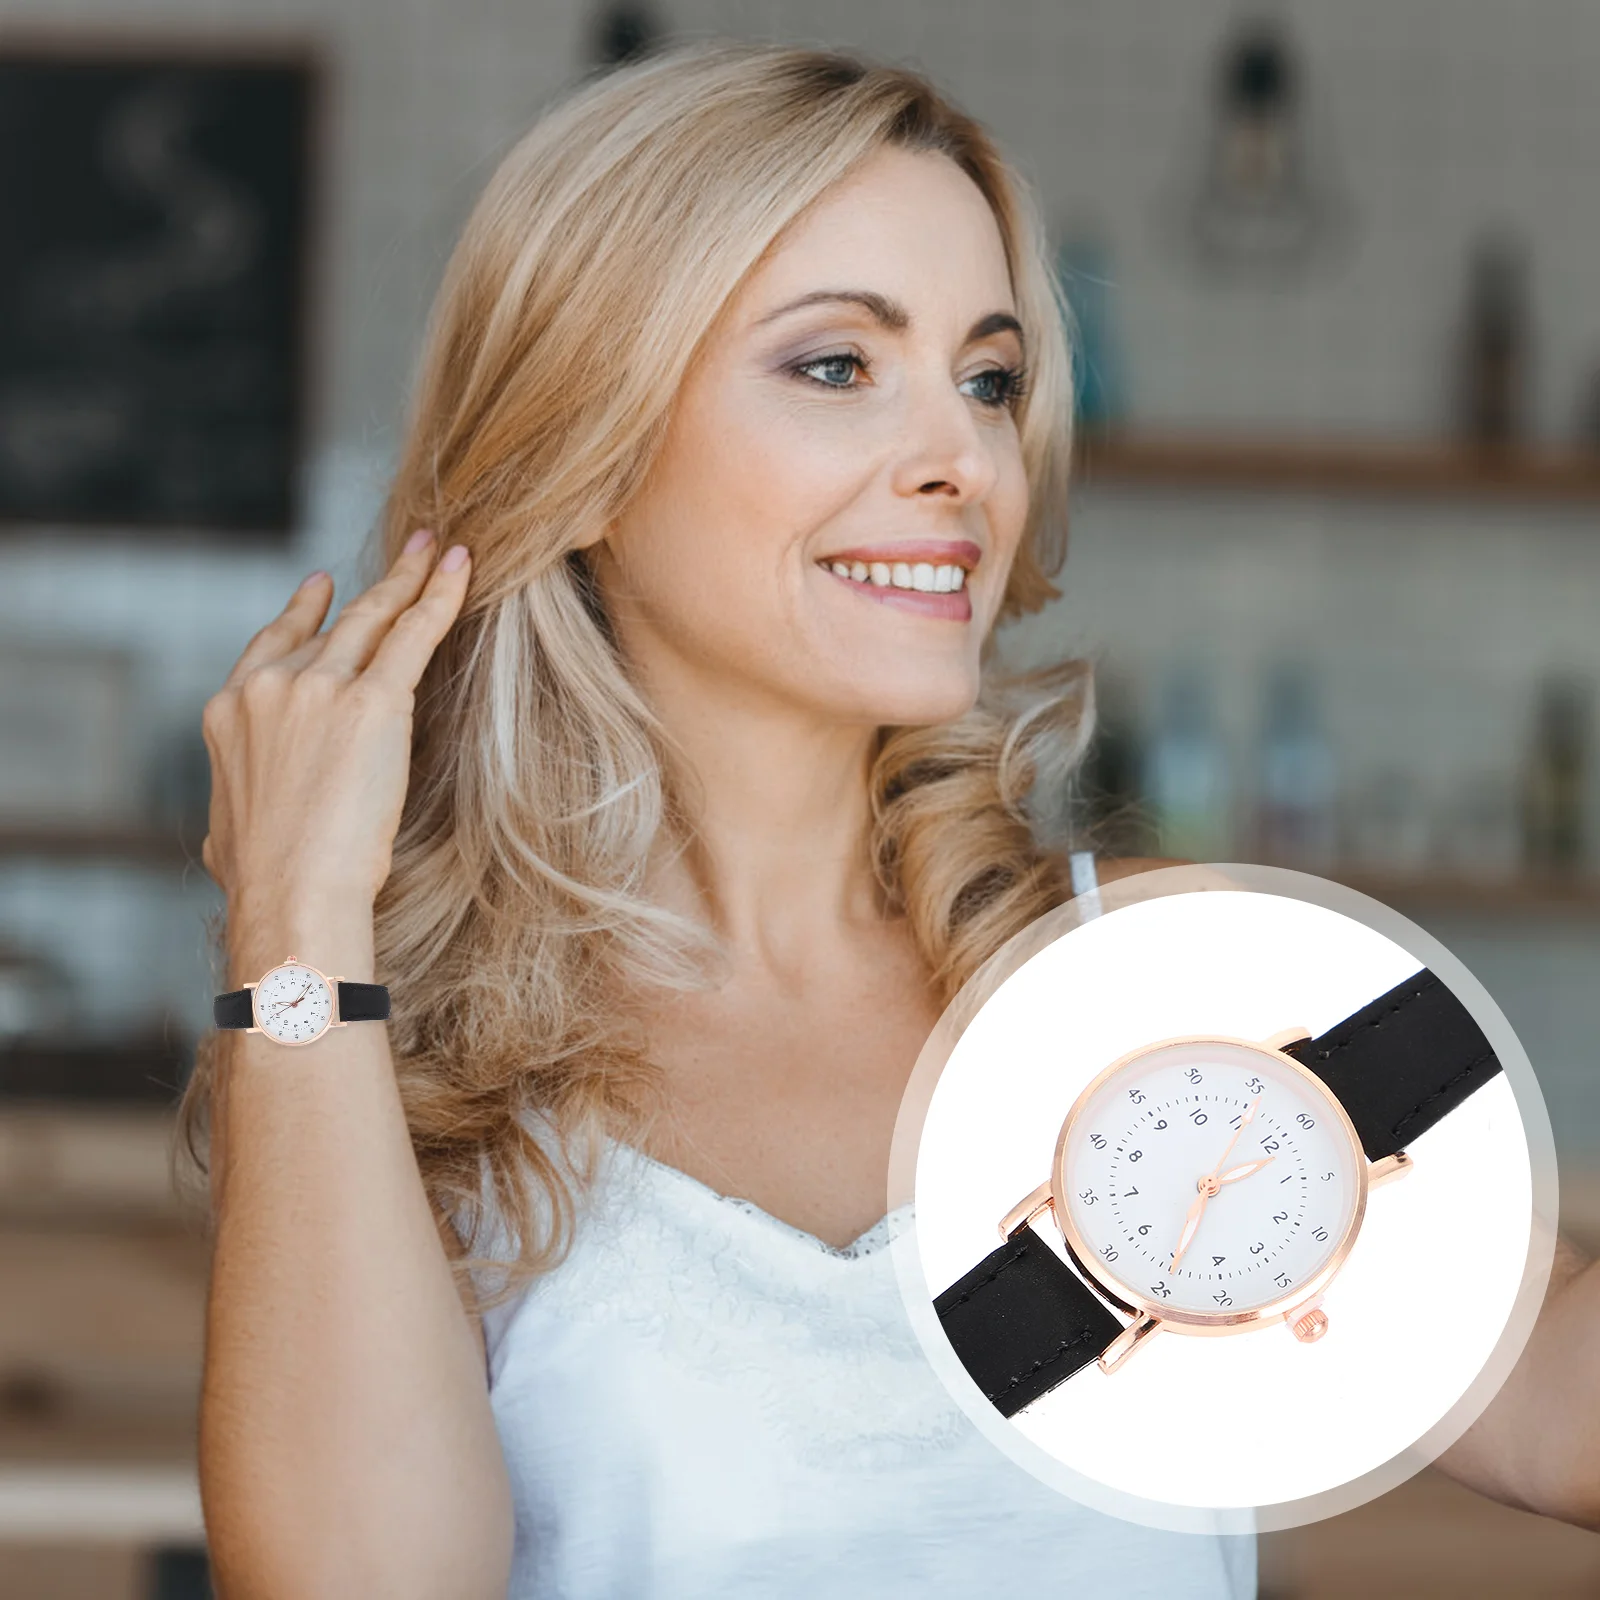 

Цифровые часы Balacoo для мальчиков, женские наручные часы, модные часы для медсестер с большим лицом и удобным чтением, секундный силиконовый ремешок